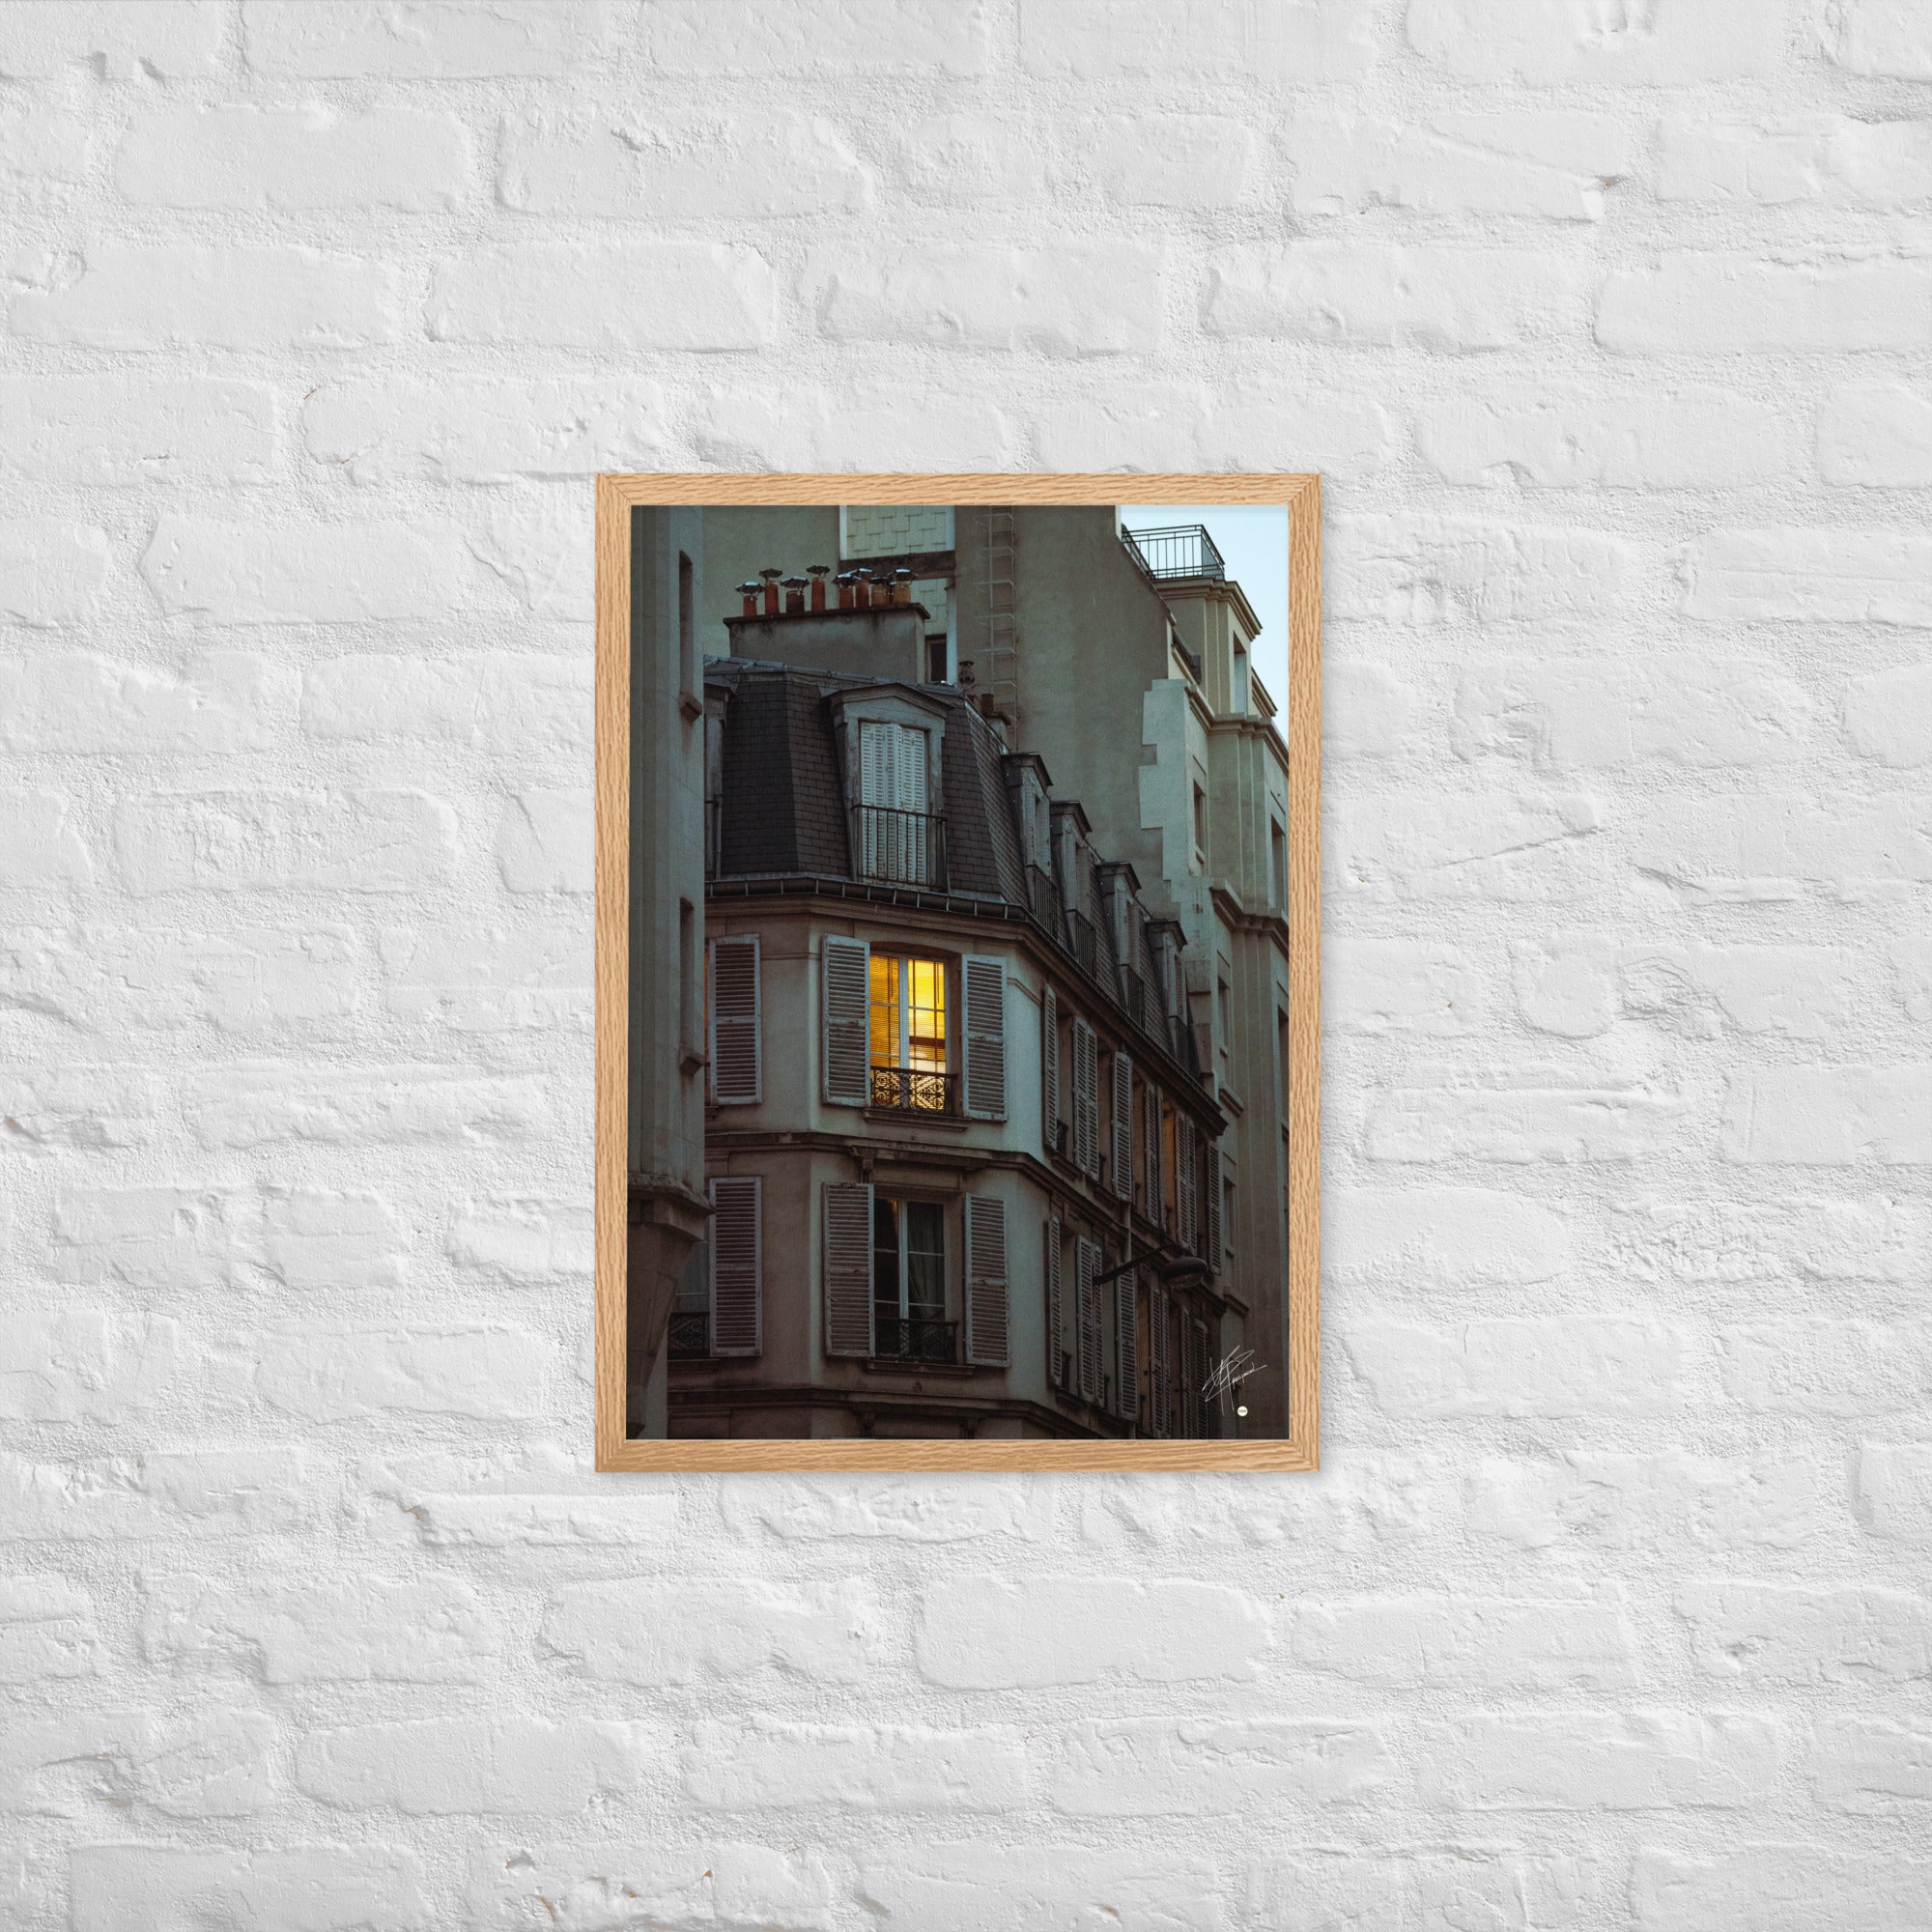 Photographie nocturne d'un bâtiment parisien vintage. Une fenêtre illuminée projette une lumière douce et chaleureuse, évoquant l'intimité d'un foyer parisien.